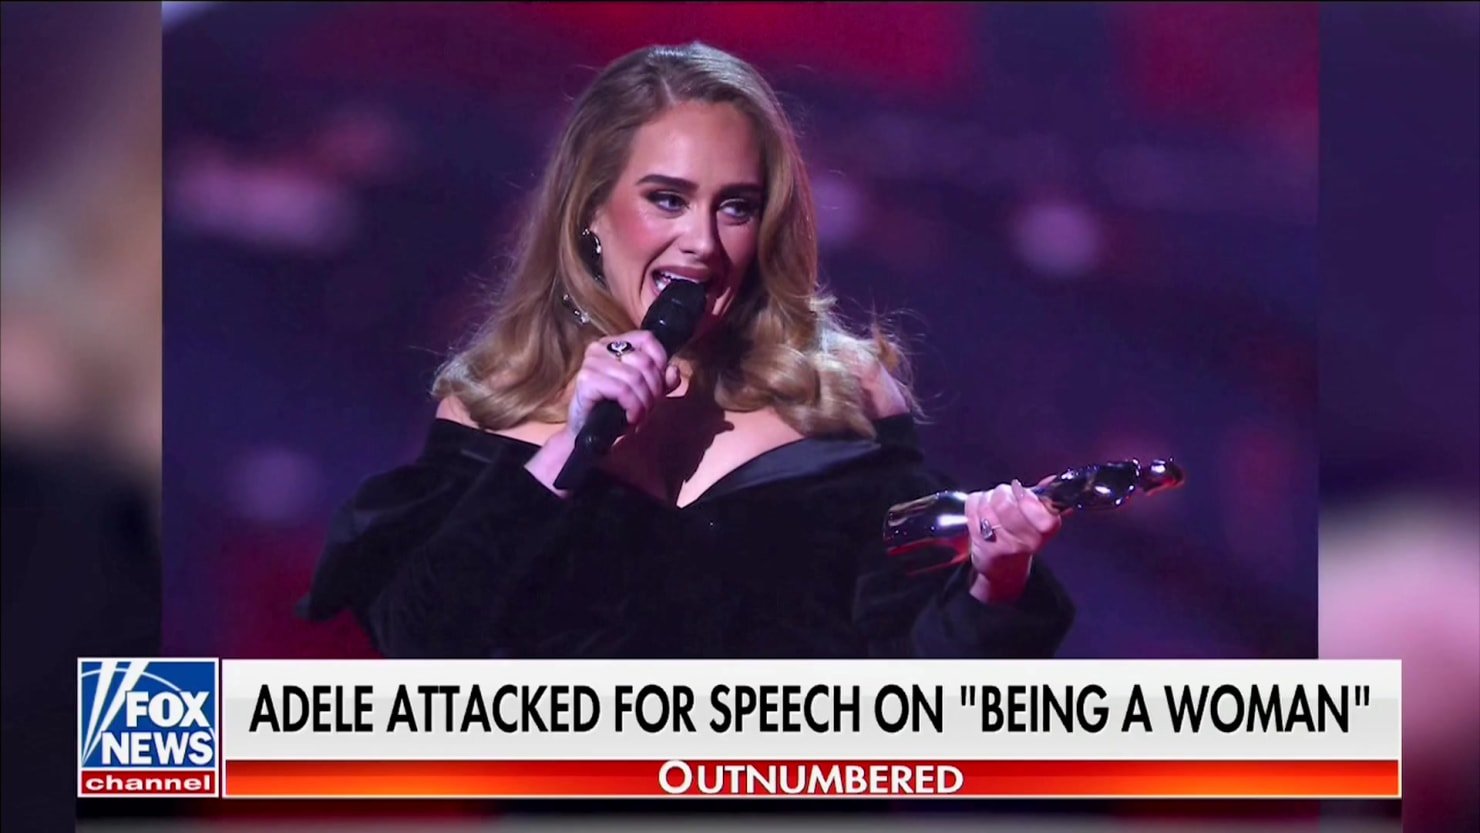 Los medios de comunicación de la derecha fabrican un falso ciclo de indignación sobre Adele